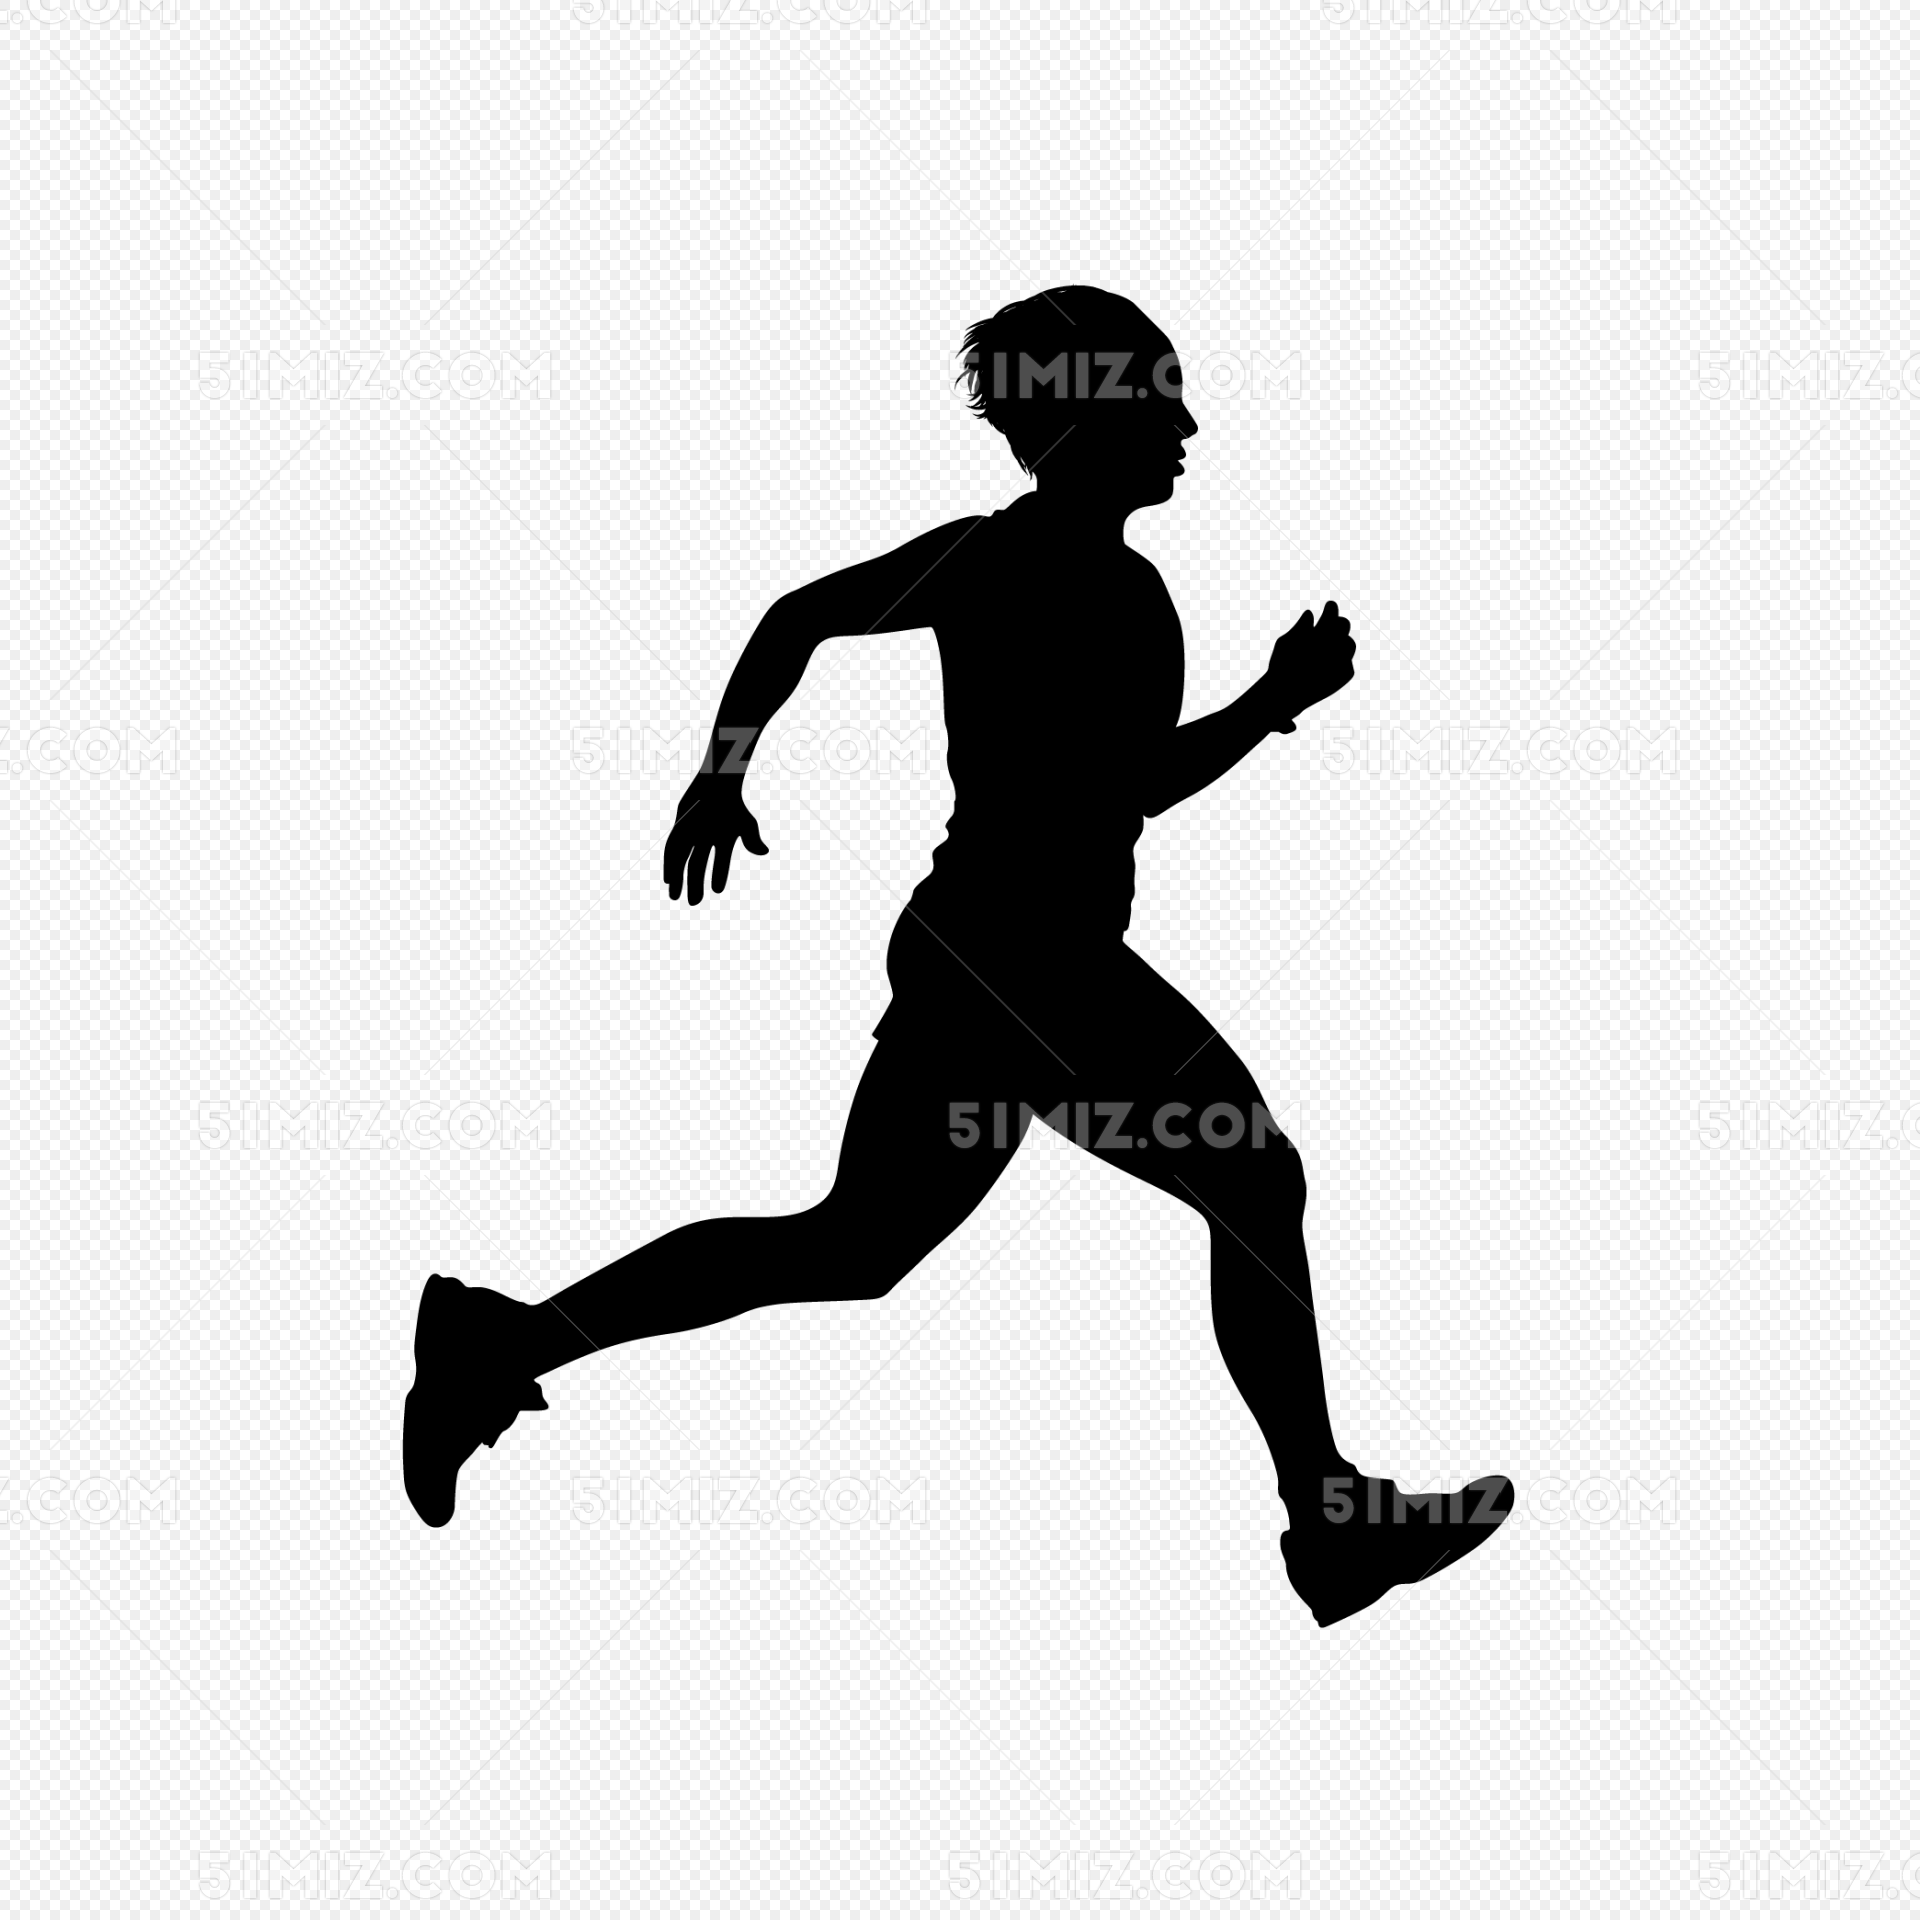 急速跑步的人物图片素材免费下载 - 觅知网